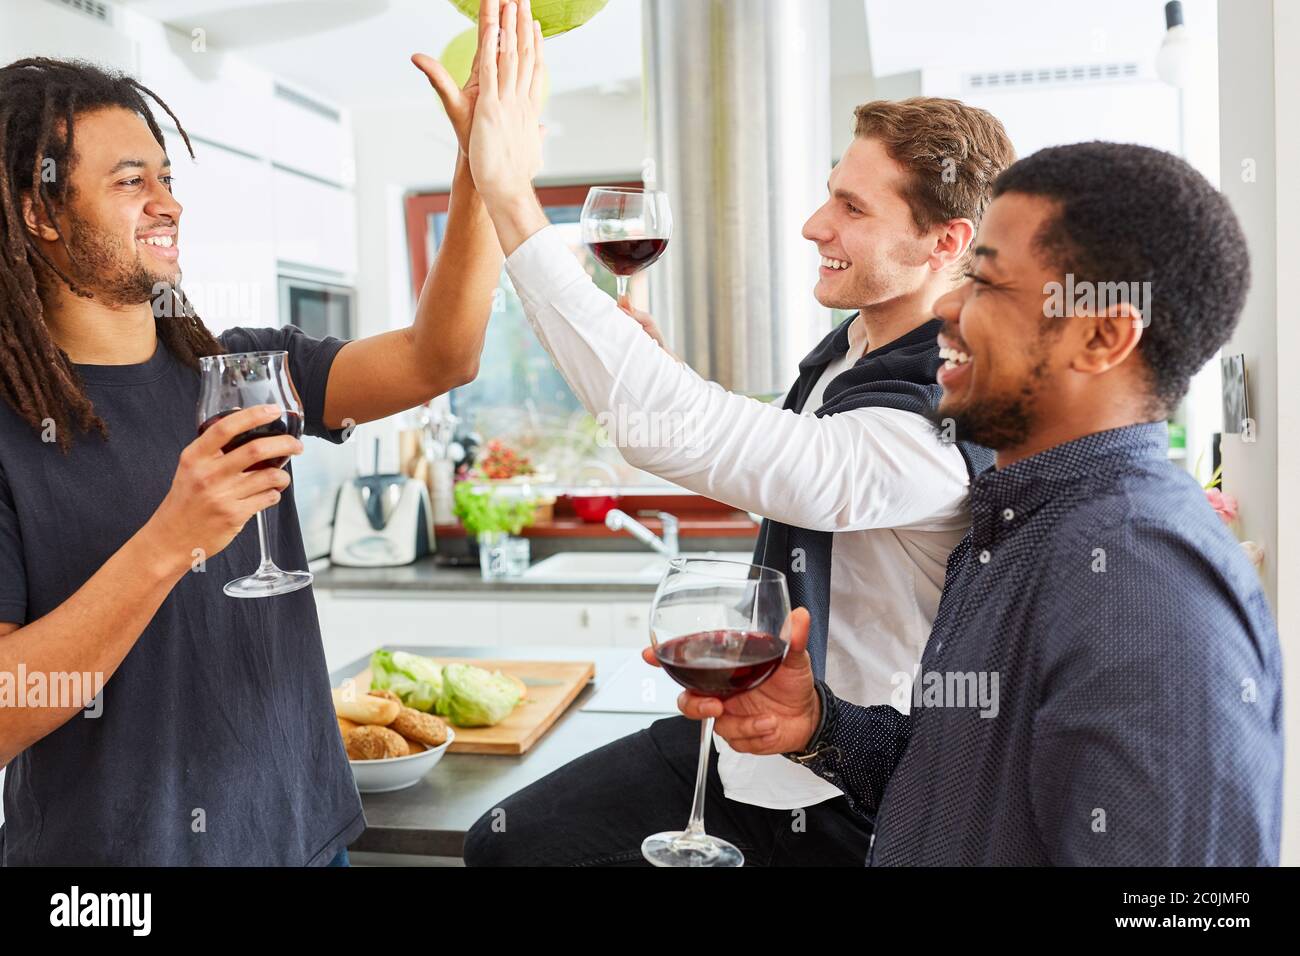 Gli amici studenti ridenti si danno cinque in alto in una festa condivisa a casa in cucina Foto Stock